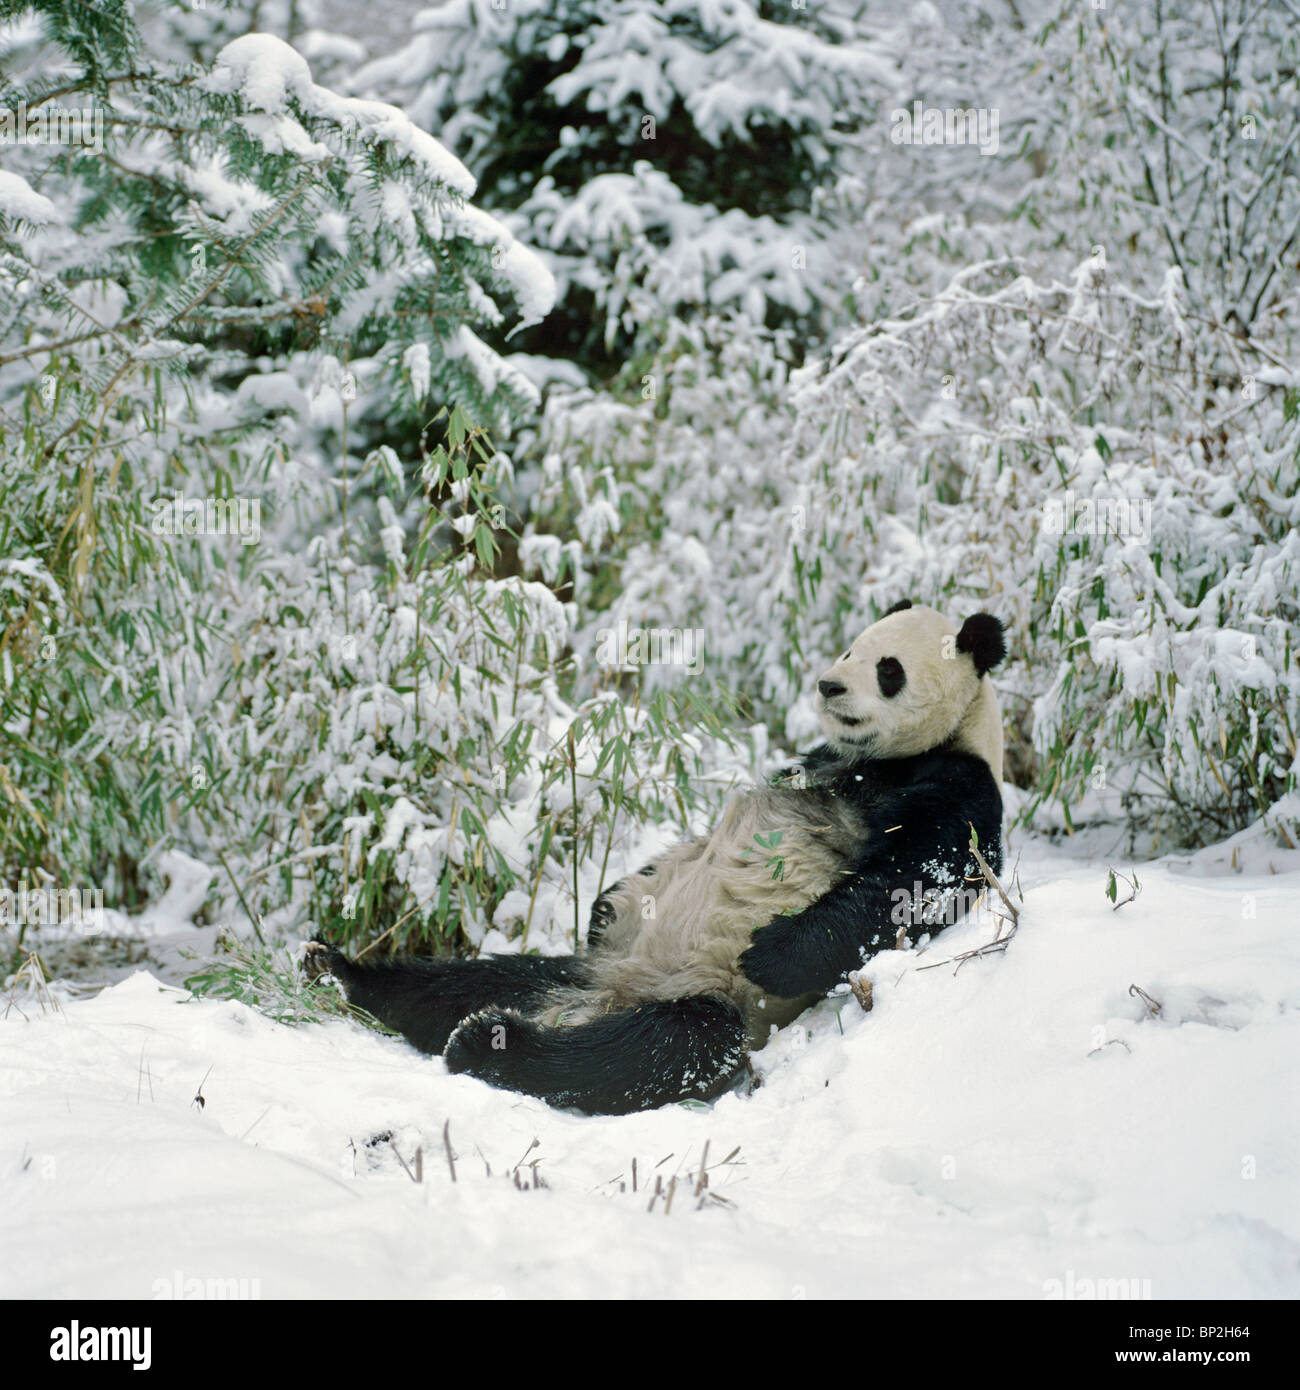 El panda gigante de tumbarse en la nieve después de alimentarlo, Wolong en China Foto de stock